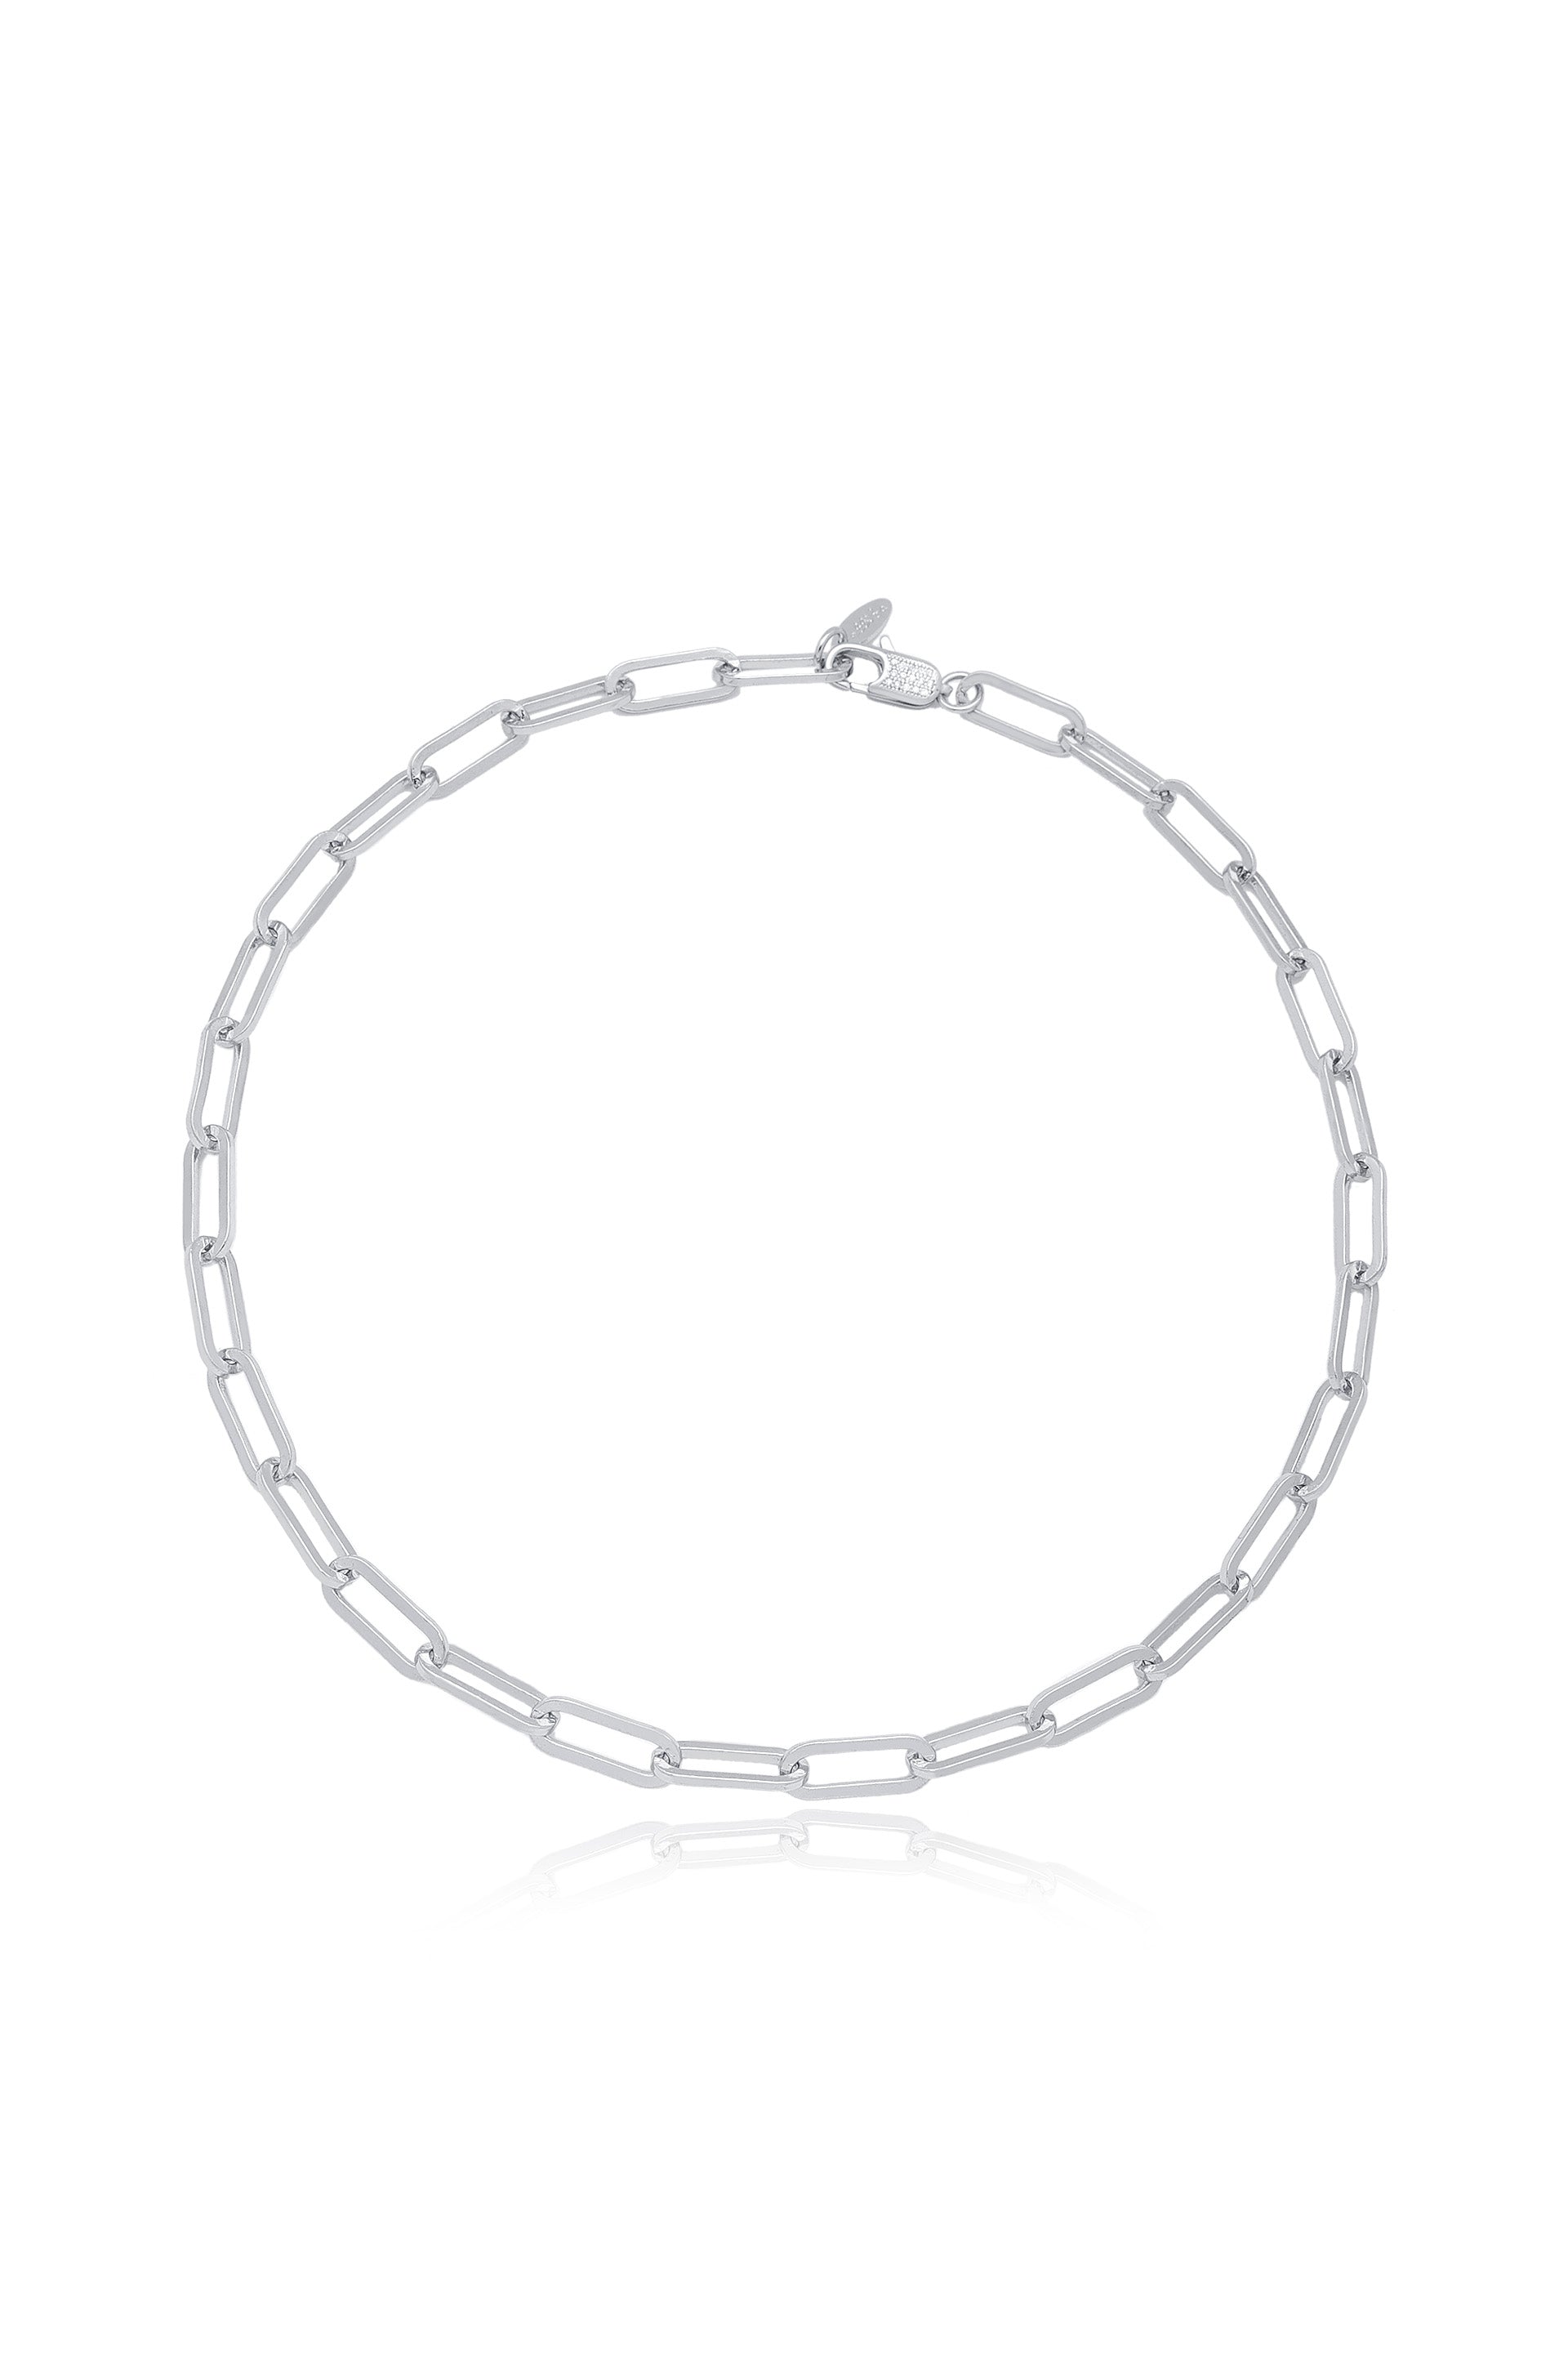 Interlinked Chain Necklace in rhodium